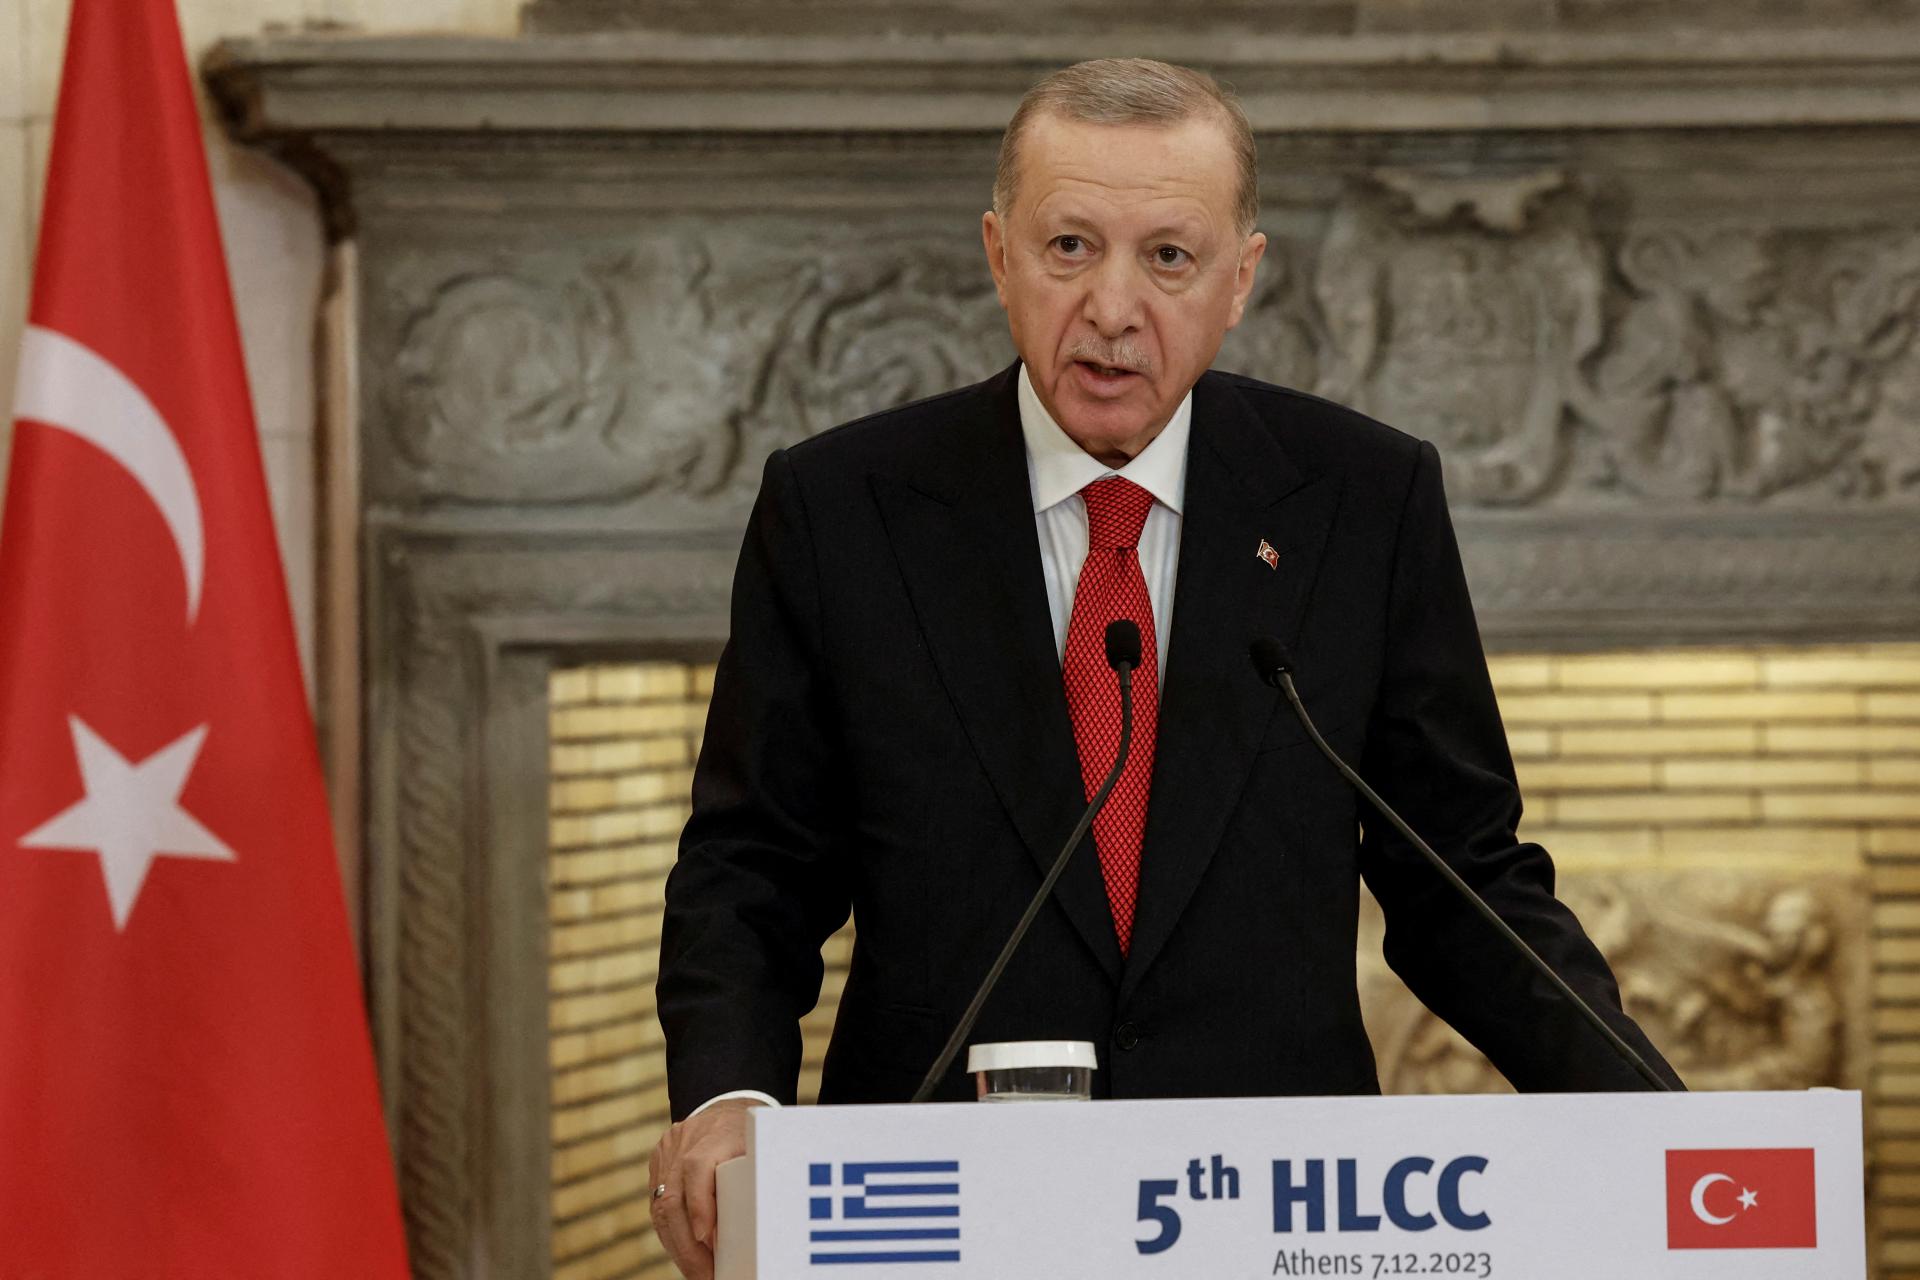 Zastavenie americkej podpory Izraelu by viedlo k prímeriu, povedal Erdogan Bidenovi